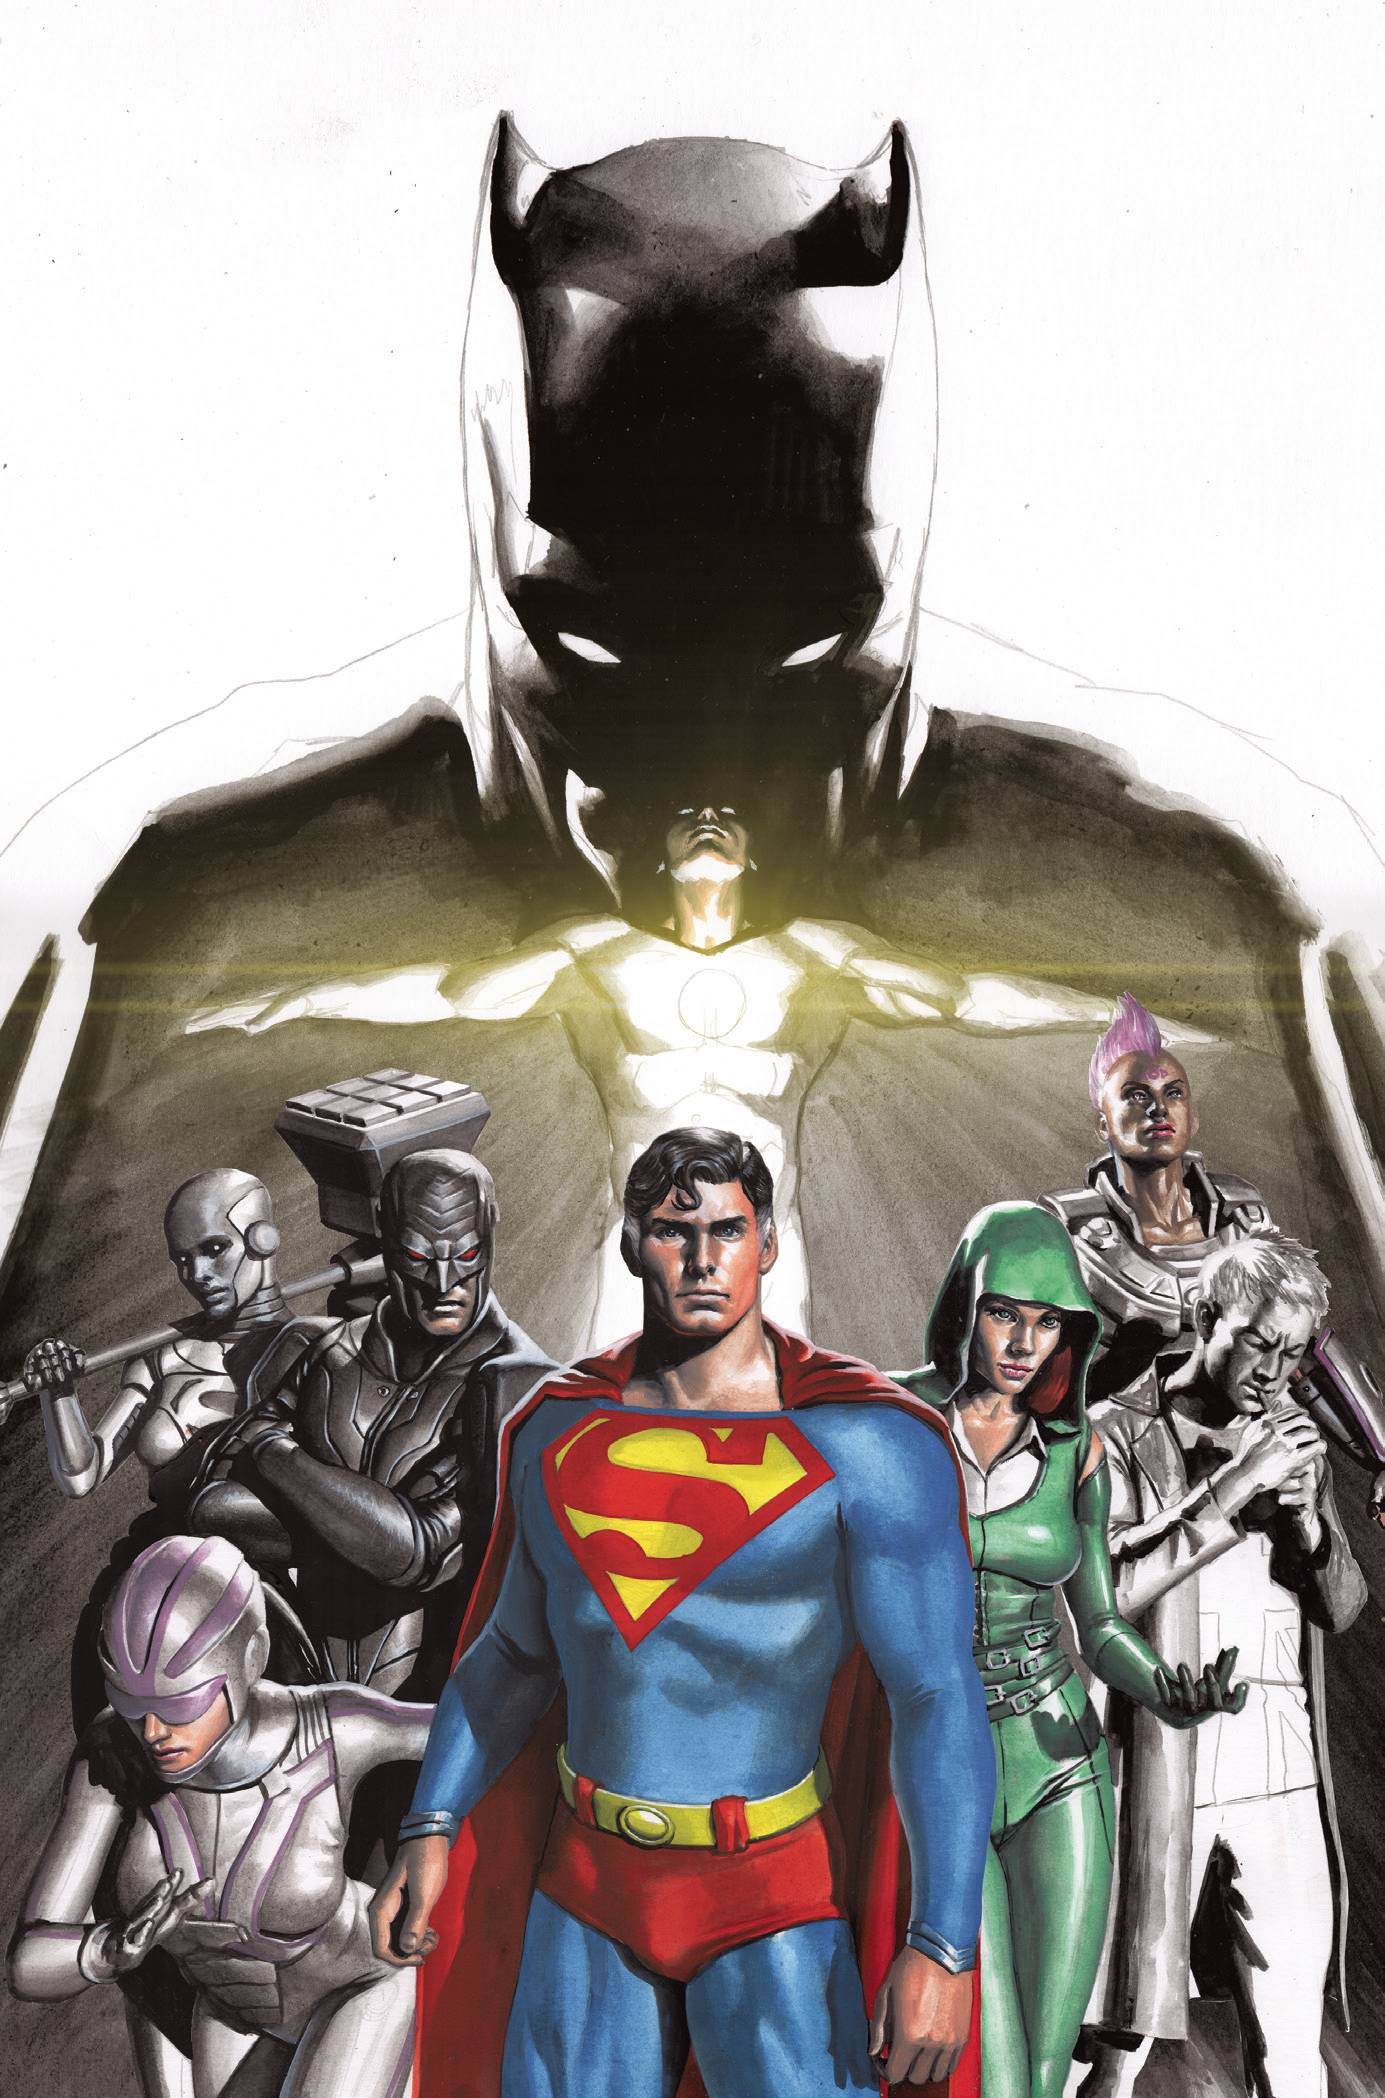 BATMAN SUPERMAN AUTHORITY SPECIAL #1 ONE SHOT CVR A MIGLIARI | L.A. Mood Comics and Games